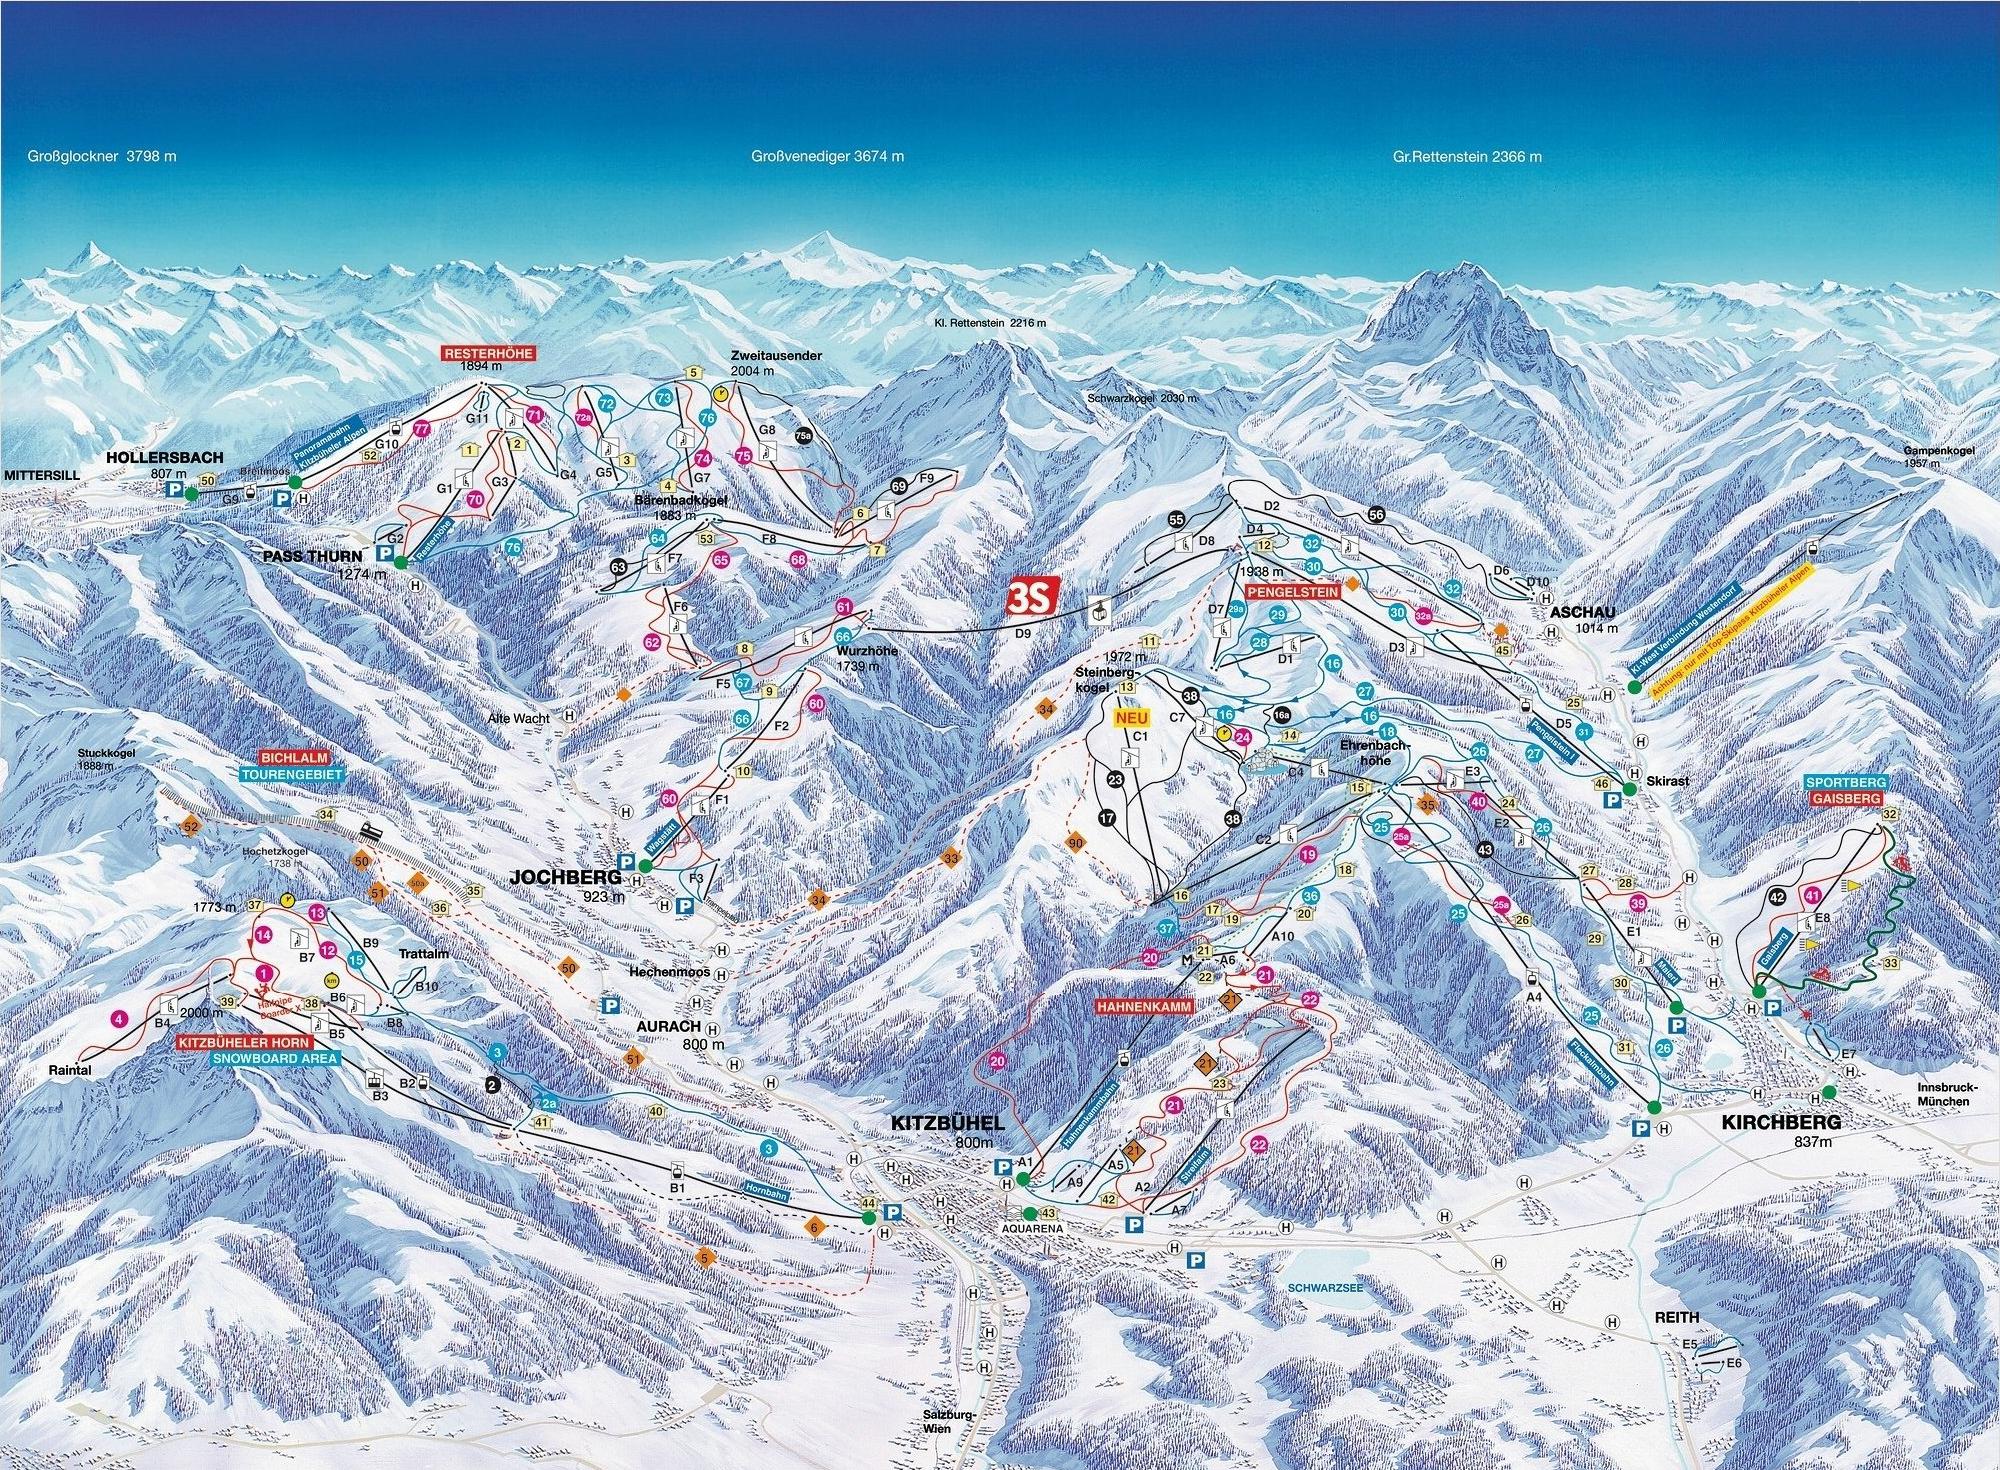 карта горнолыжного курорта китцбюэль.jpg